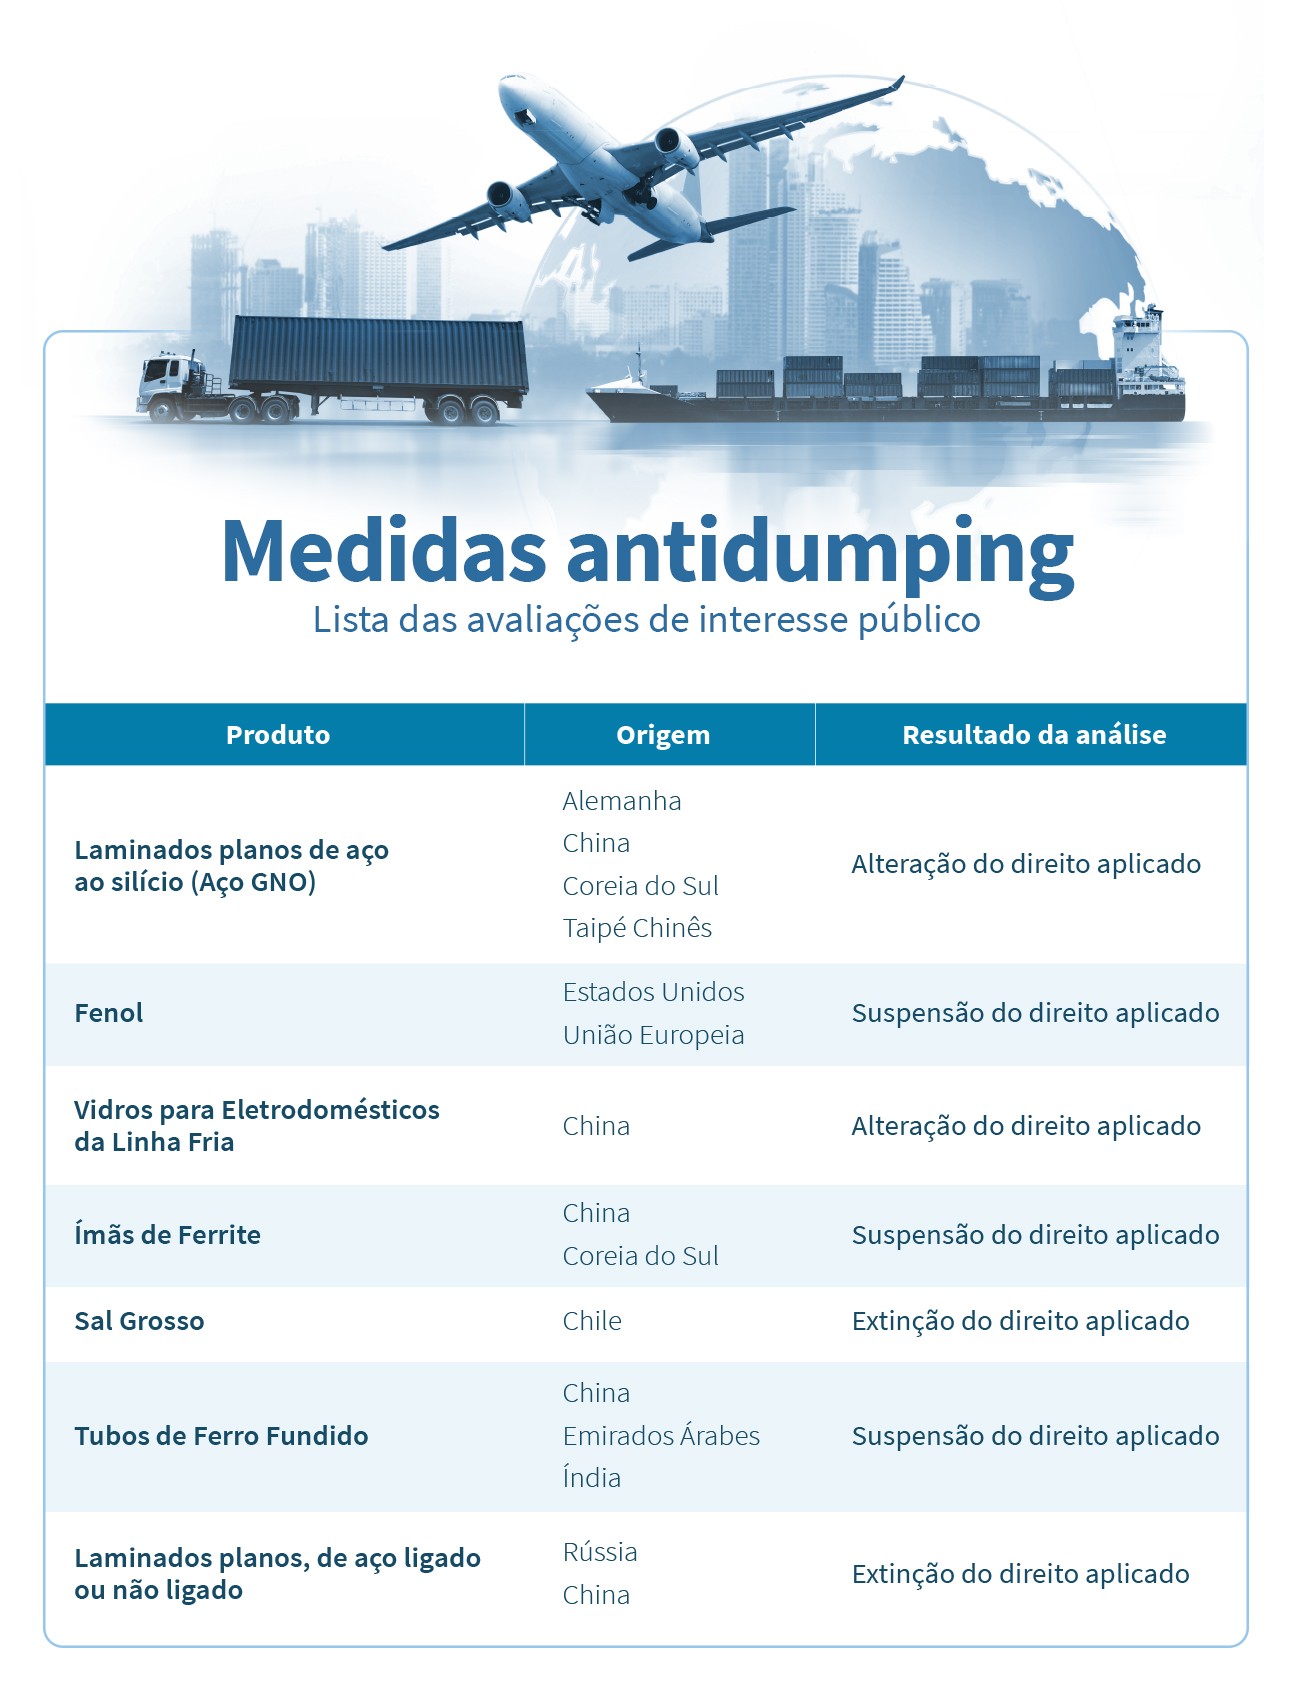 Brasil altera 35% das medidas antidumping com base em critérios de concorrência